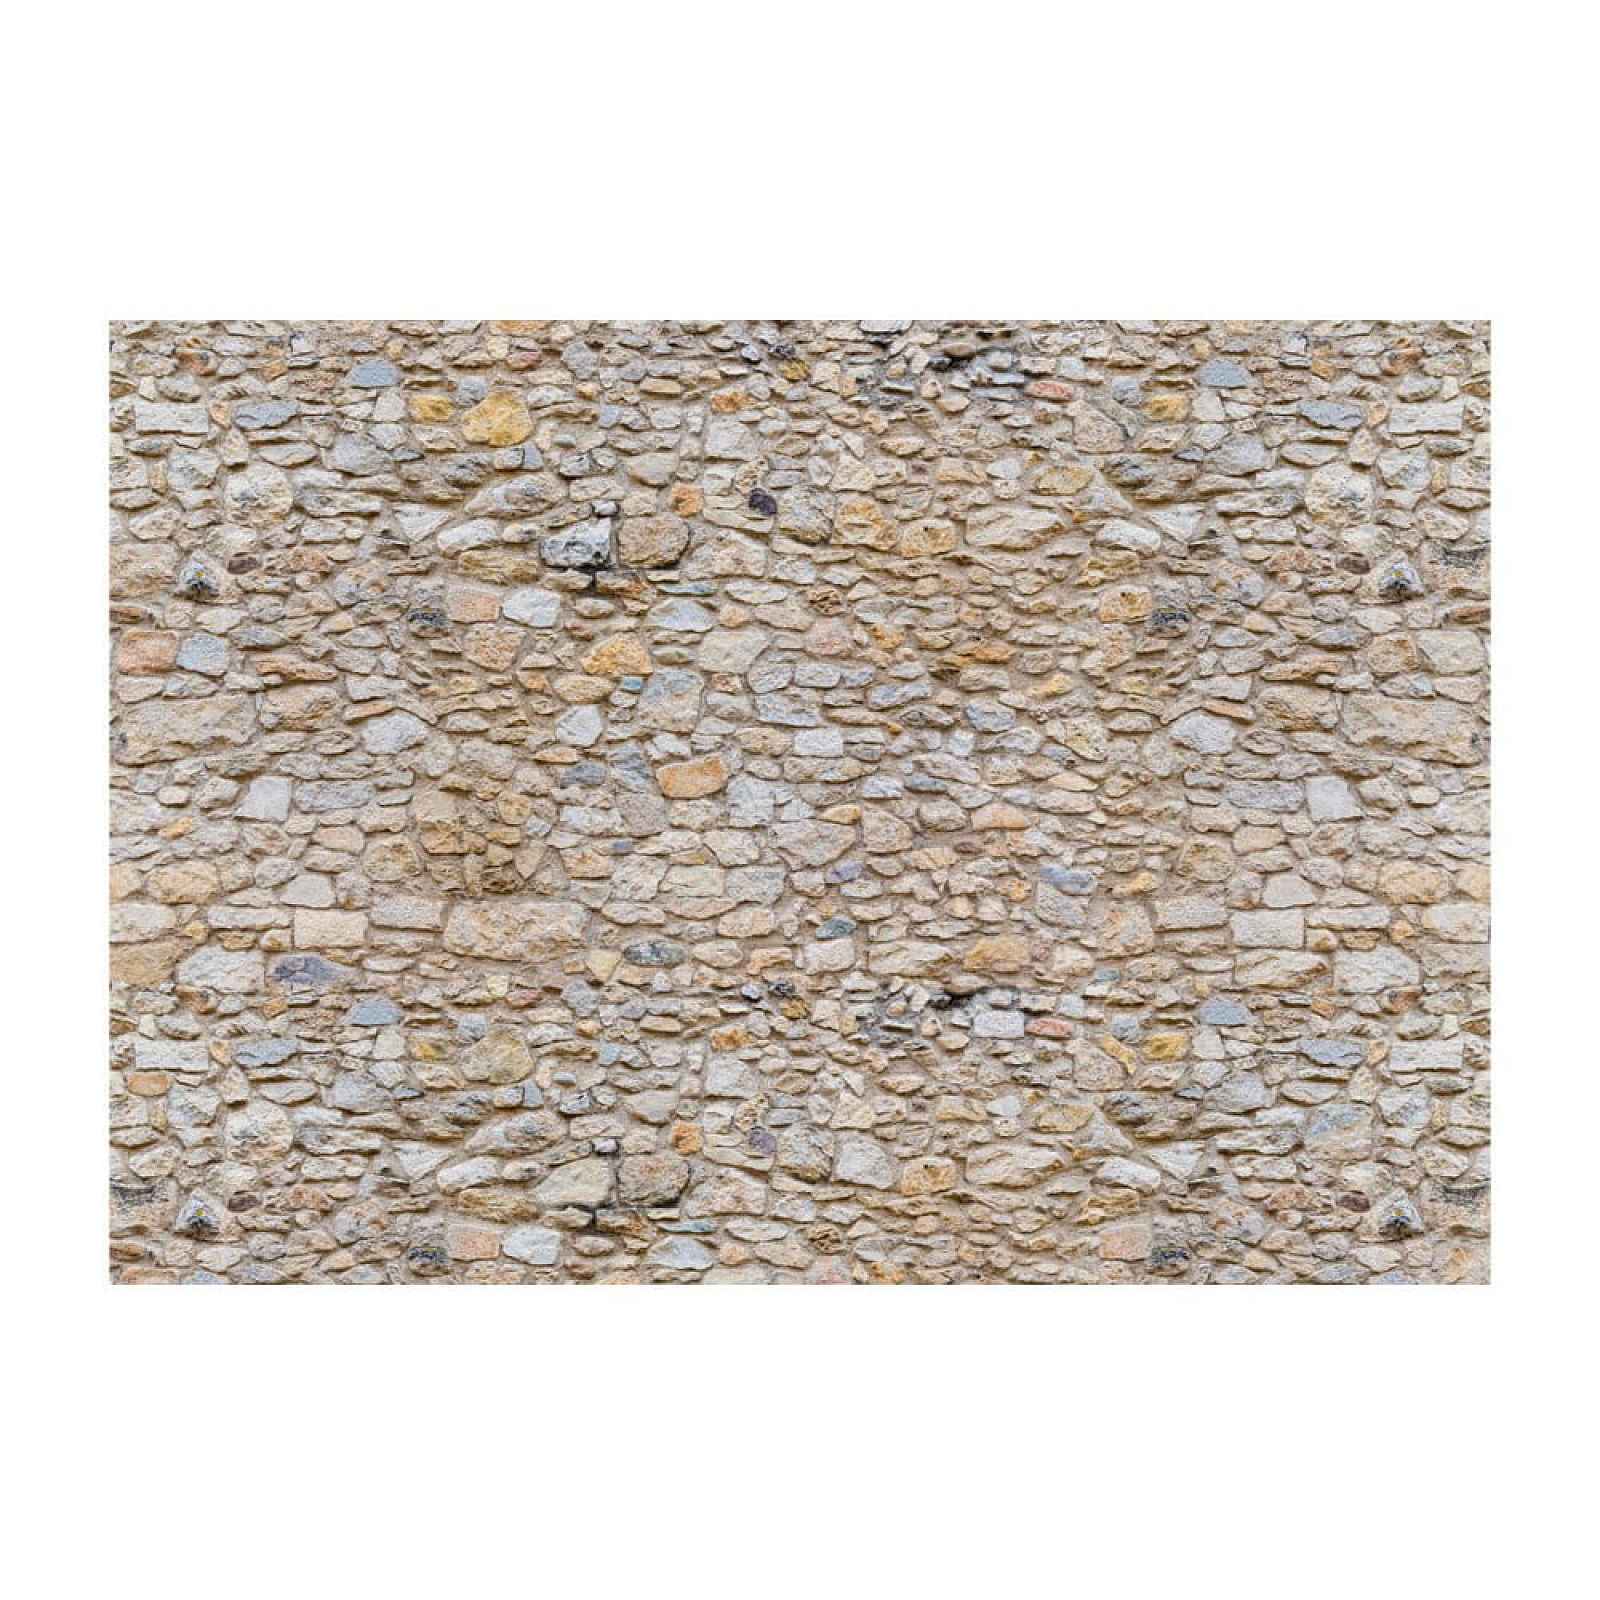 Velkoformátová tapeta Artgeist Pebbles, 400 x 280 cm